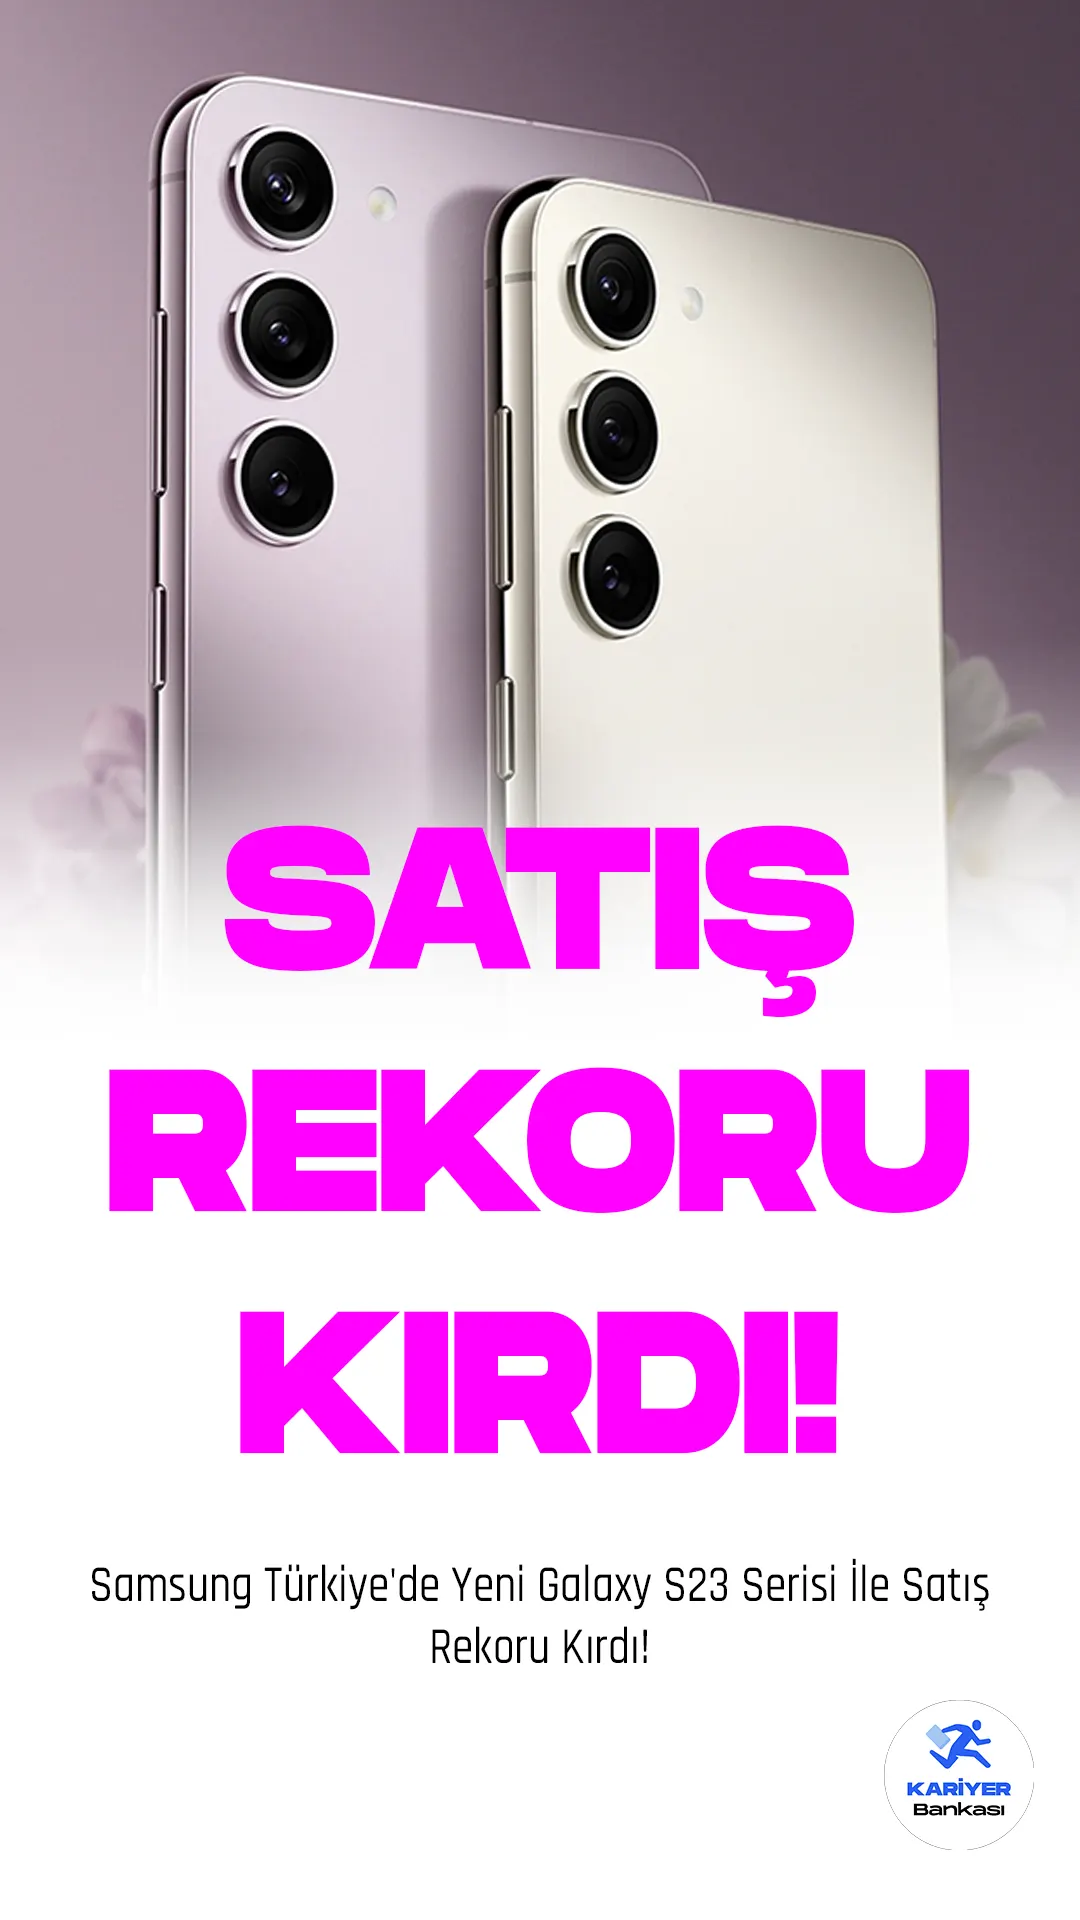 Samsung Türkiye'de Yeni Galaxy S23 Serisi İle Satış Rekoru Kırdı!Samsung, Türkiye'nin yeni Galaxy S23 Serisi'nin ön satış döneminde Orta Doğu ve Kuzey Afrika (MENA) bölgesinde geçen yıla göre satış oranını ikiye katlayarak, şampiyon ülke konumunda olduğunu açıkladı. Ayrıca, şirket Yeni Galaxy S23 Serisi ile kullanıcıların 5G hizmetini Türkiye'de İstanbul Havalimanı'nda 5 Nisan itibarıyla kullanabileceğini de duyurdu.